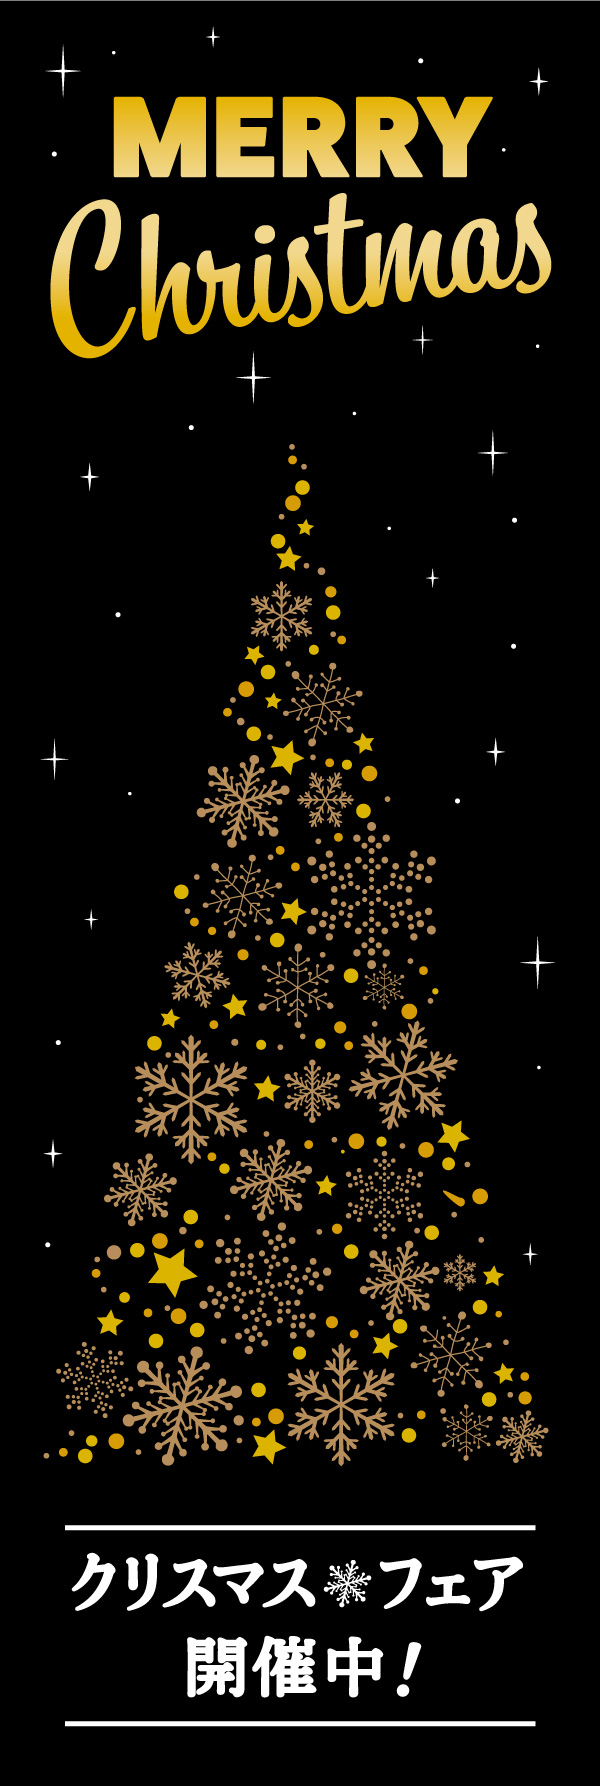 クリスマスフェア 14 「クリスマスフェア」ののぼりです。黒背景に金の飾りで、高級感のあるクリスマスのぼりに仕上げました。(Y.M)